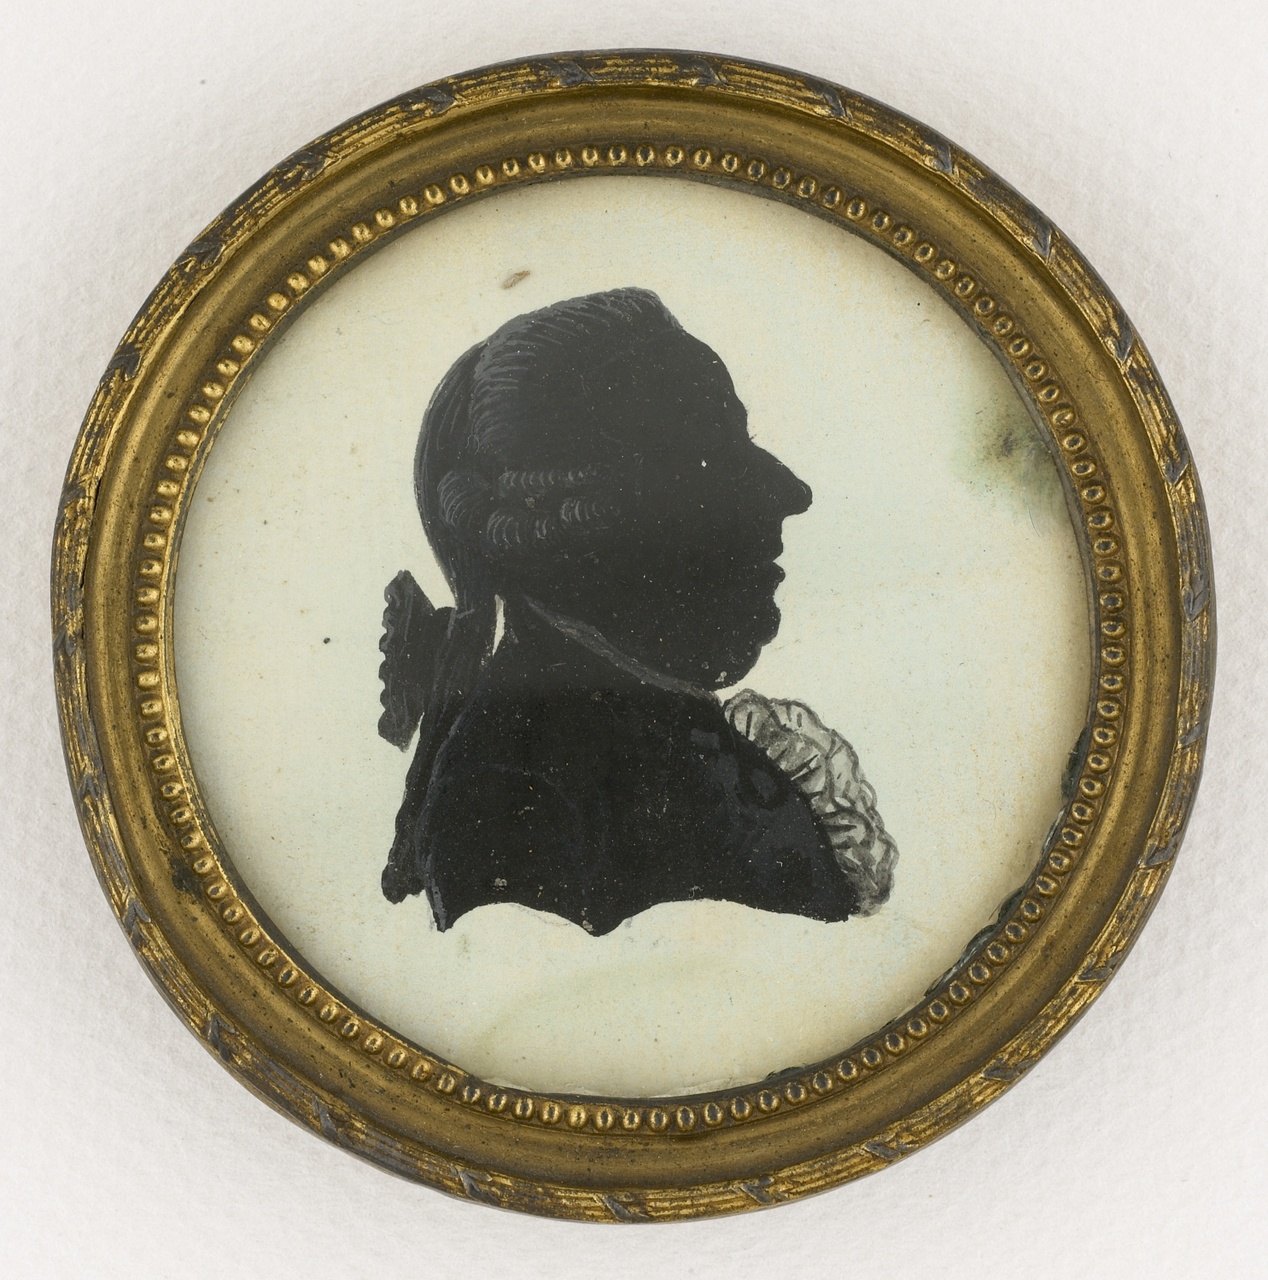 Miniatuur imitatieknipsel met portret en profil van P. Ackermans